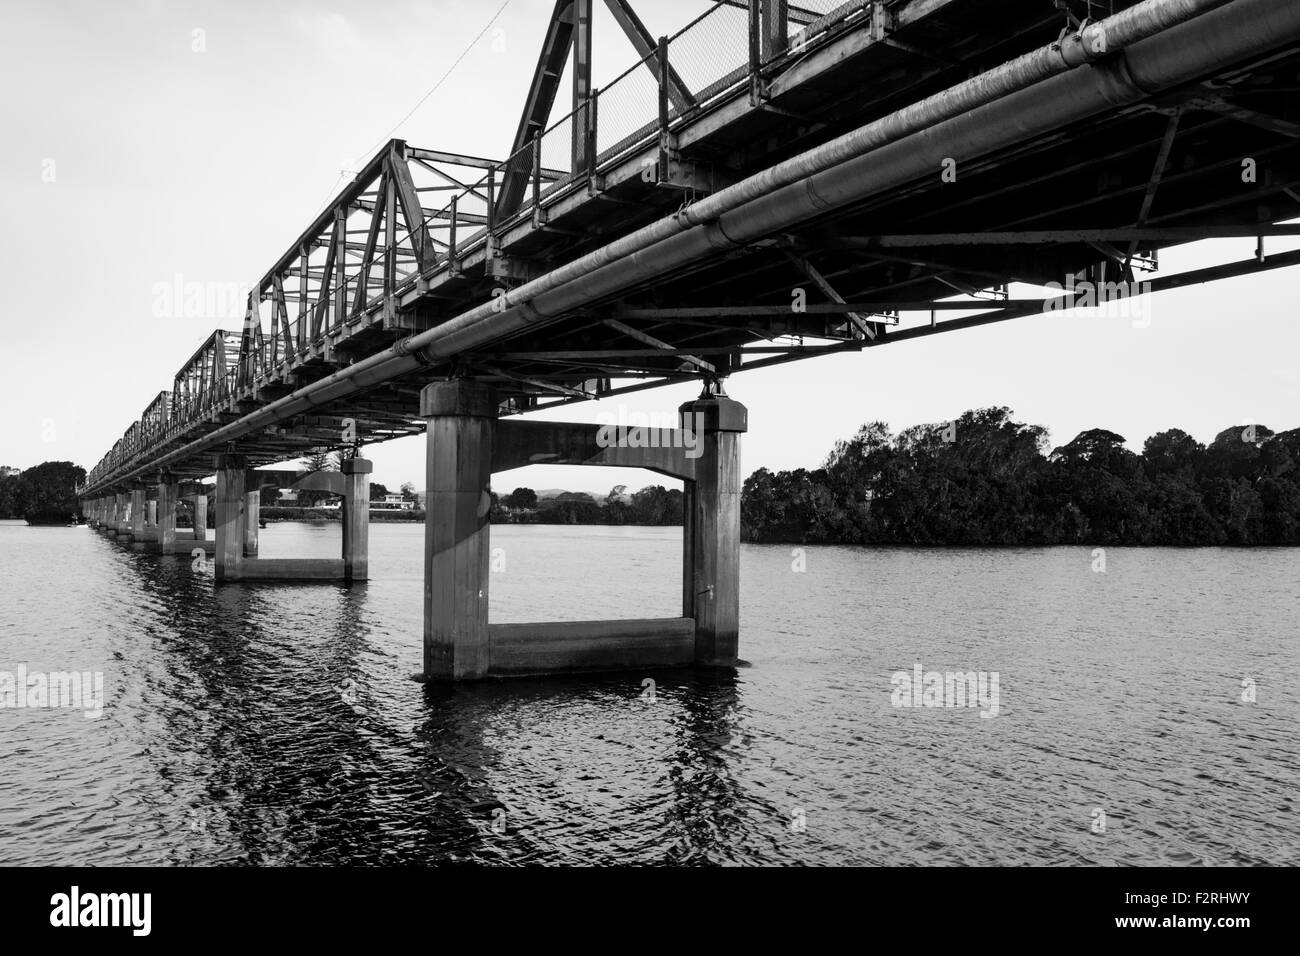 Il ponte Martin, costruito nel 1938, è un ponte stradale sul fiume Manning a Taree, nuovo Galles del Sud, Australia. Si tratta di un ponte a traliccio in acciaio di 463 m. Foto Stock